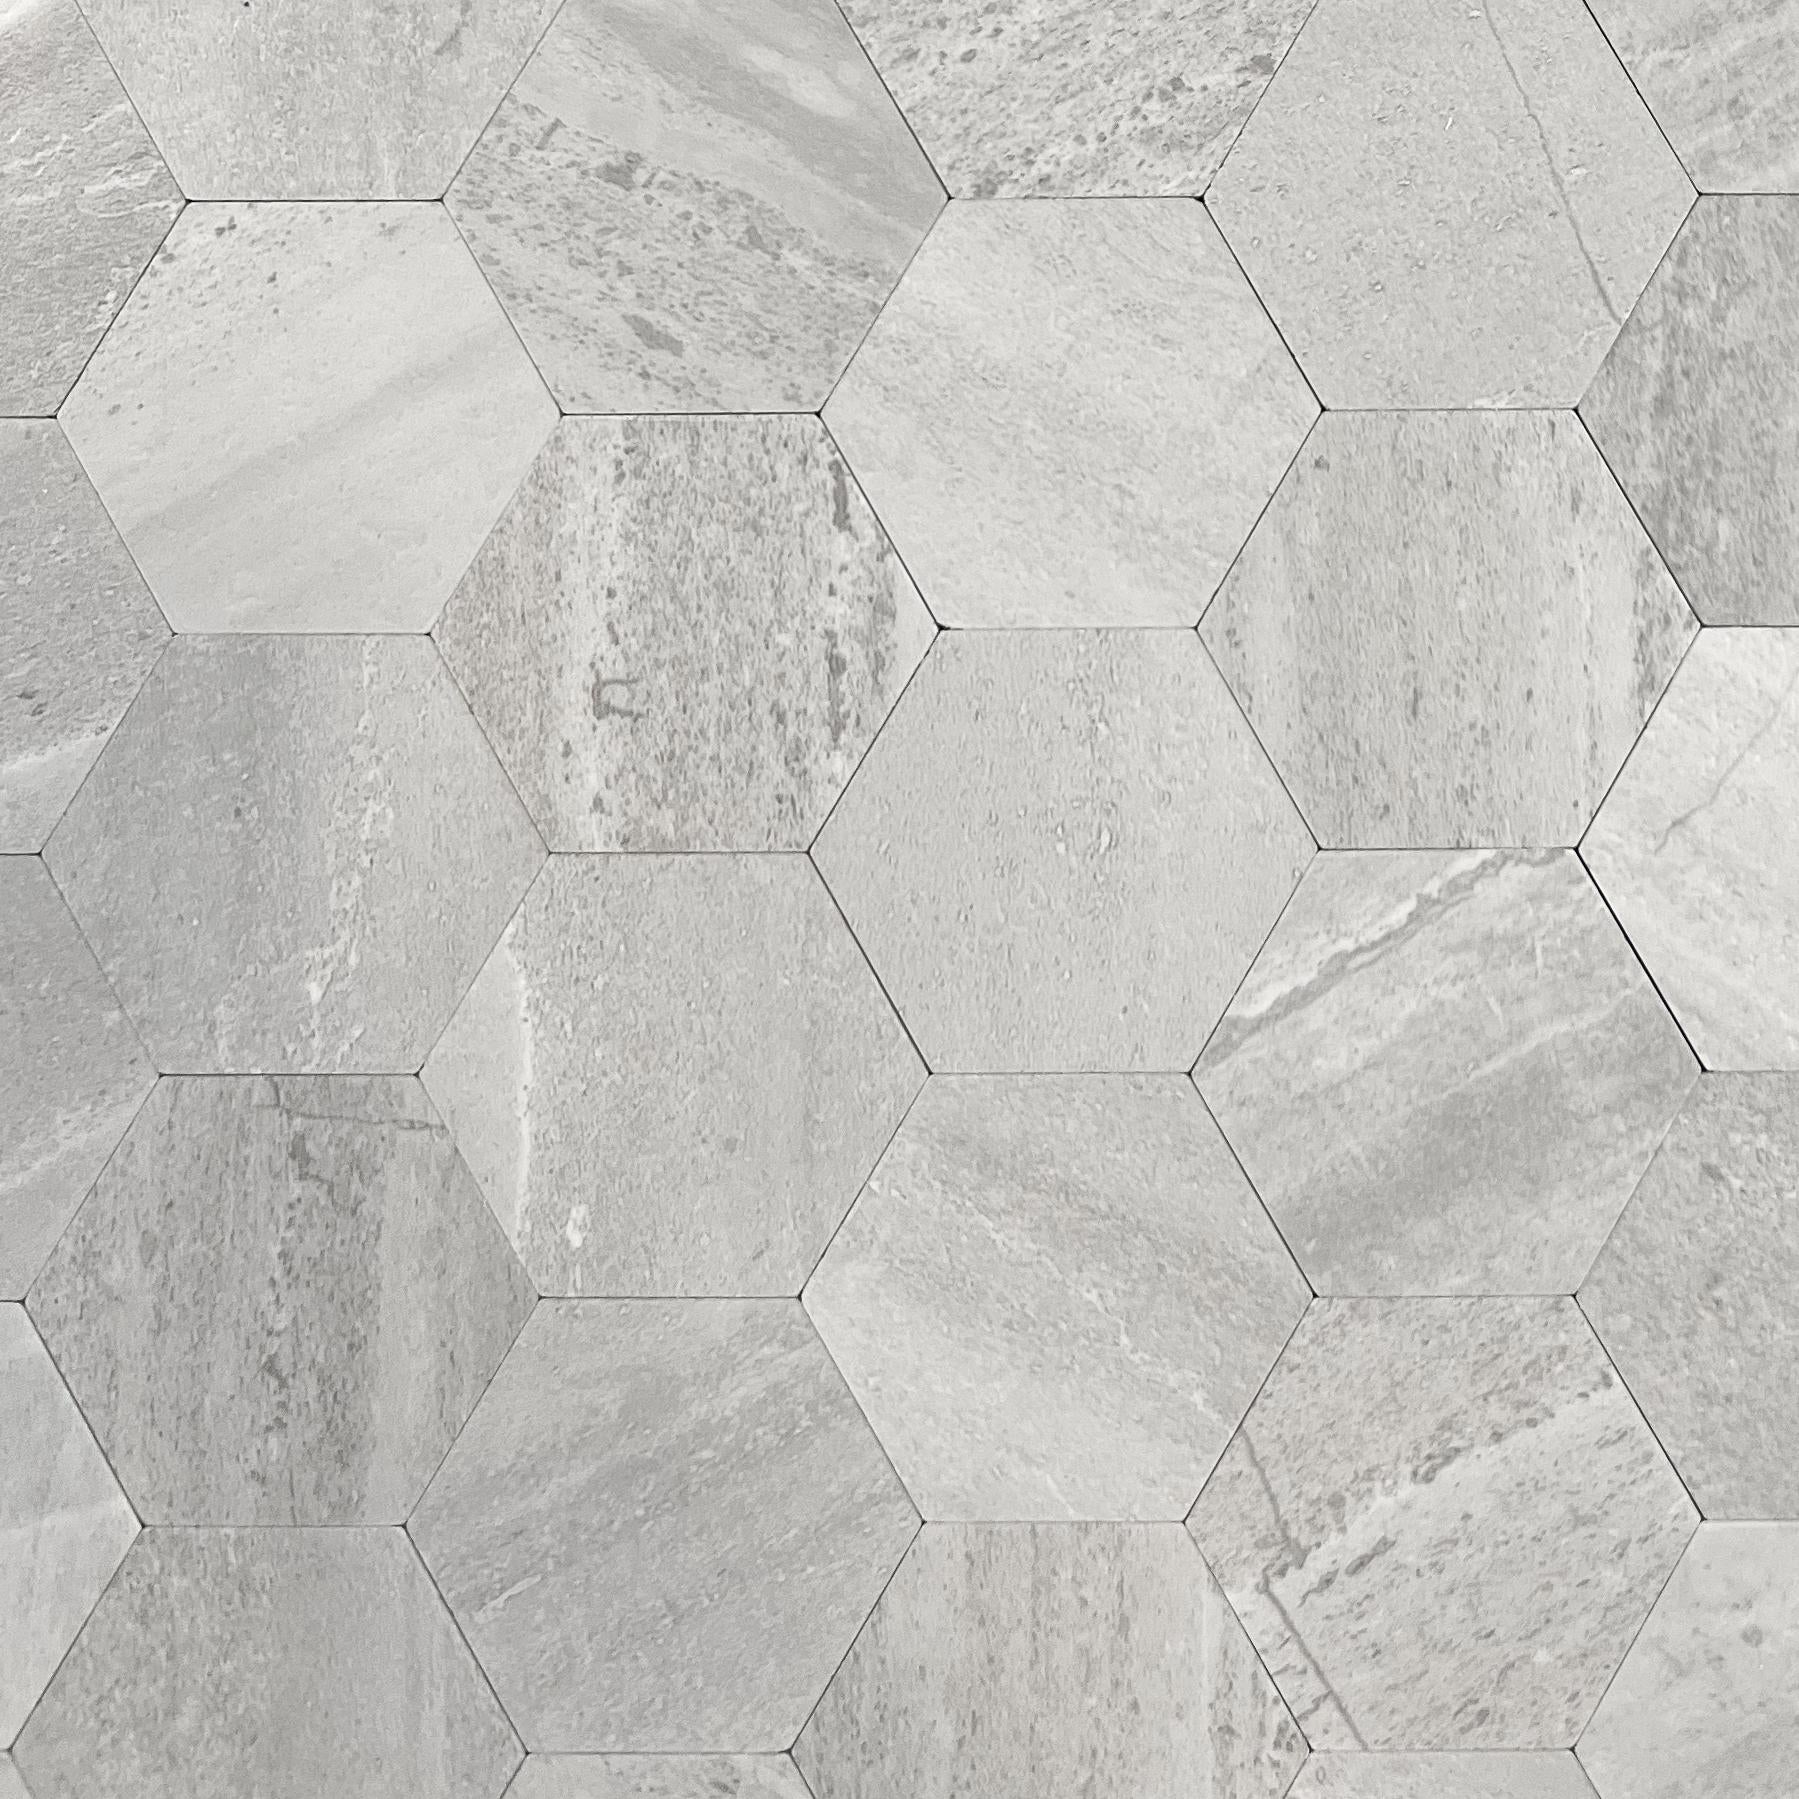 Vareprøve: Hexagon lysegrå betong selvklebende veggfliser